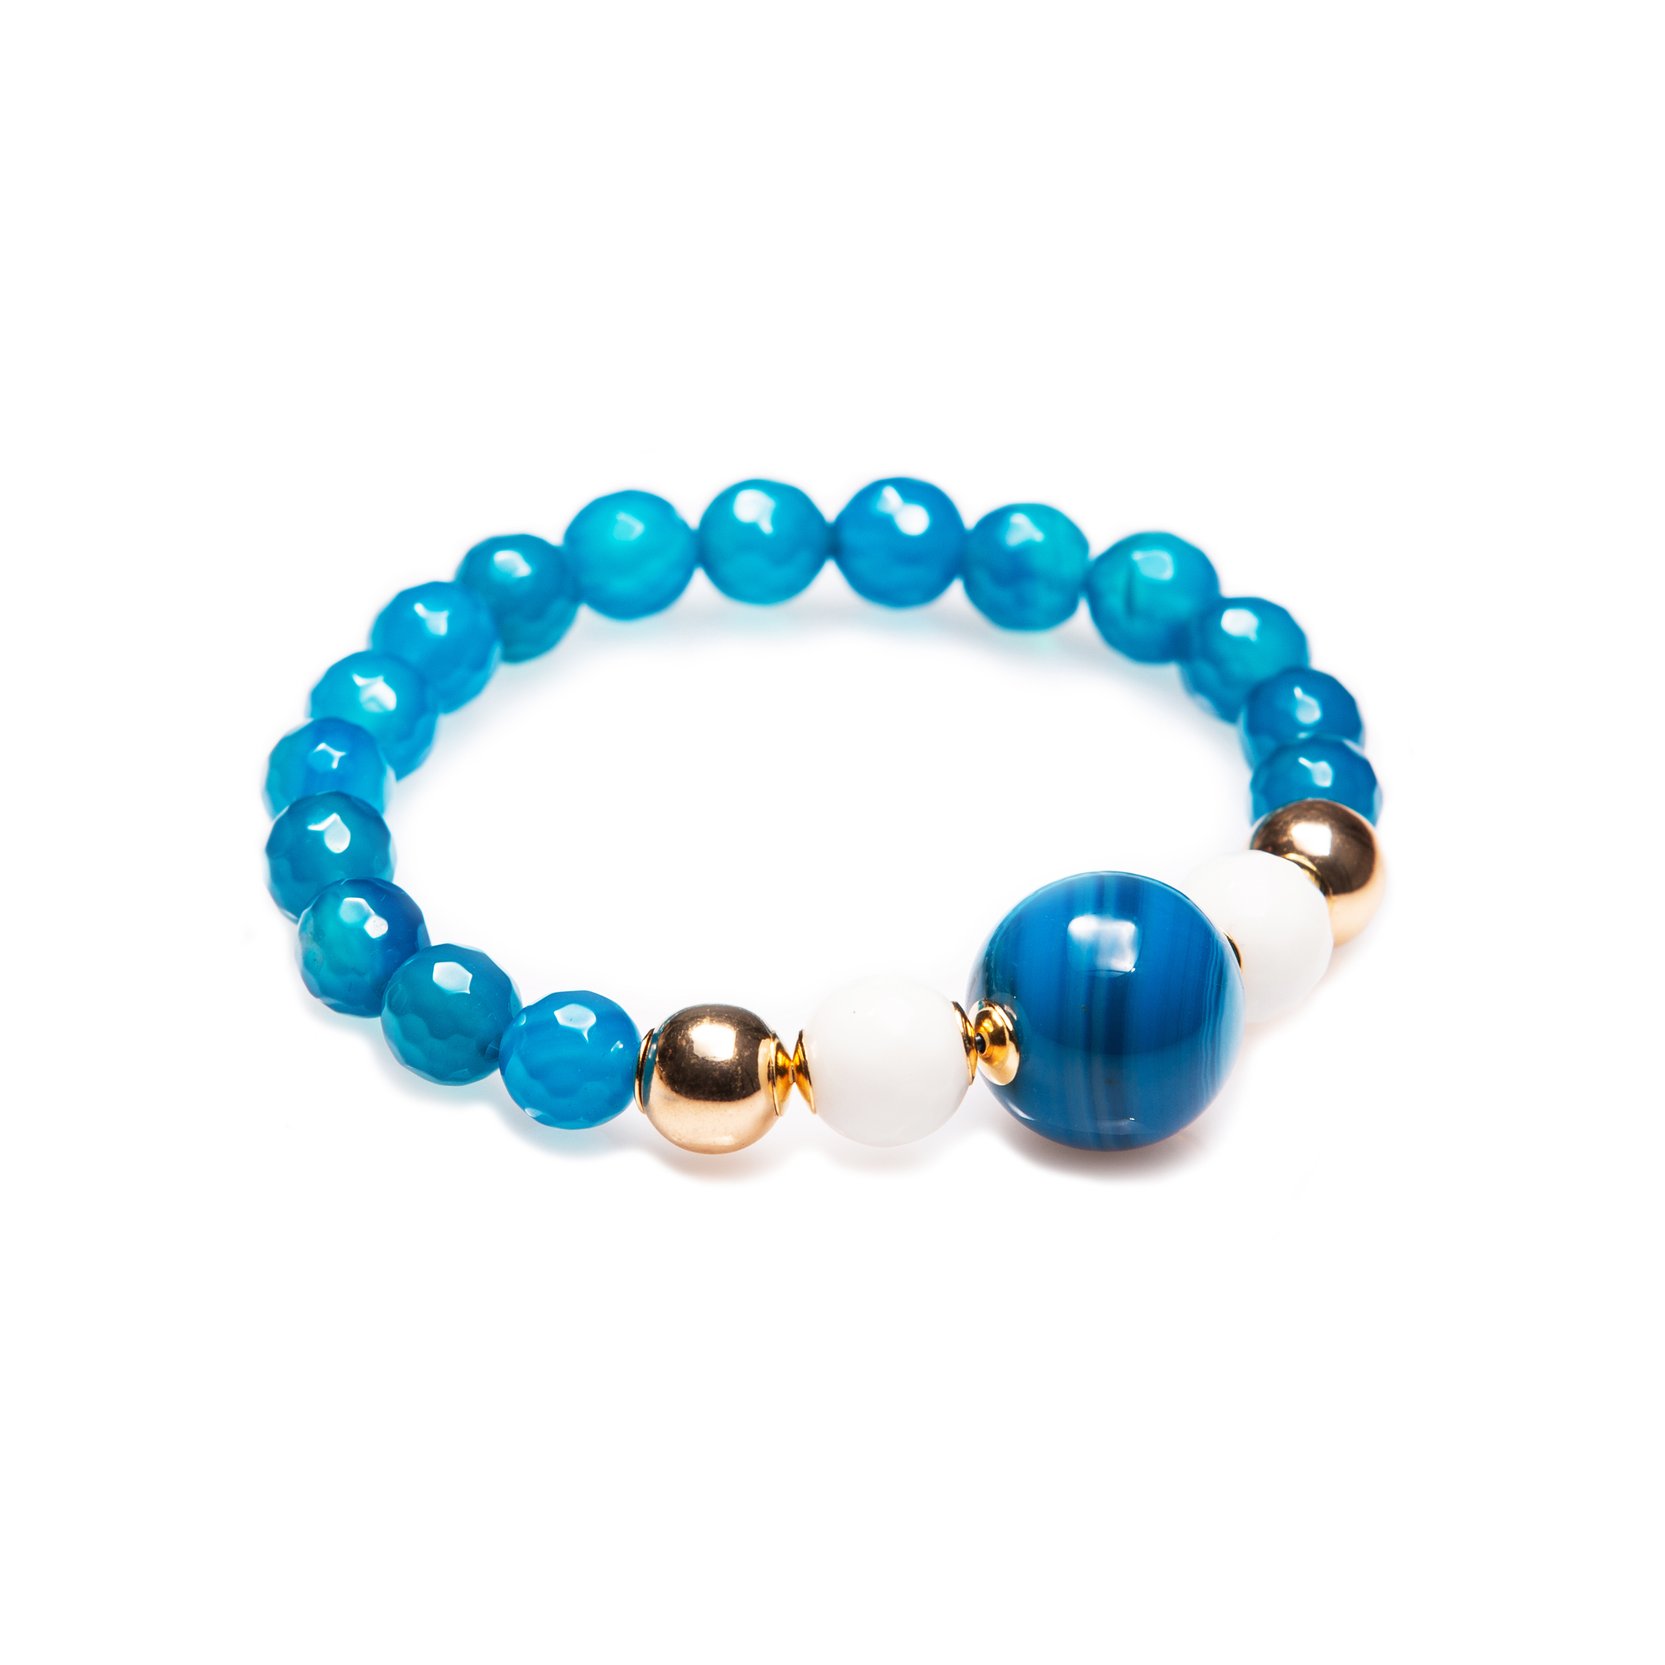 Agate bracelet of azure color.